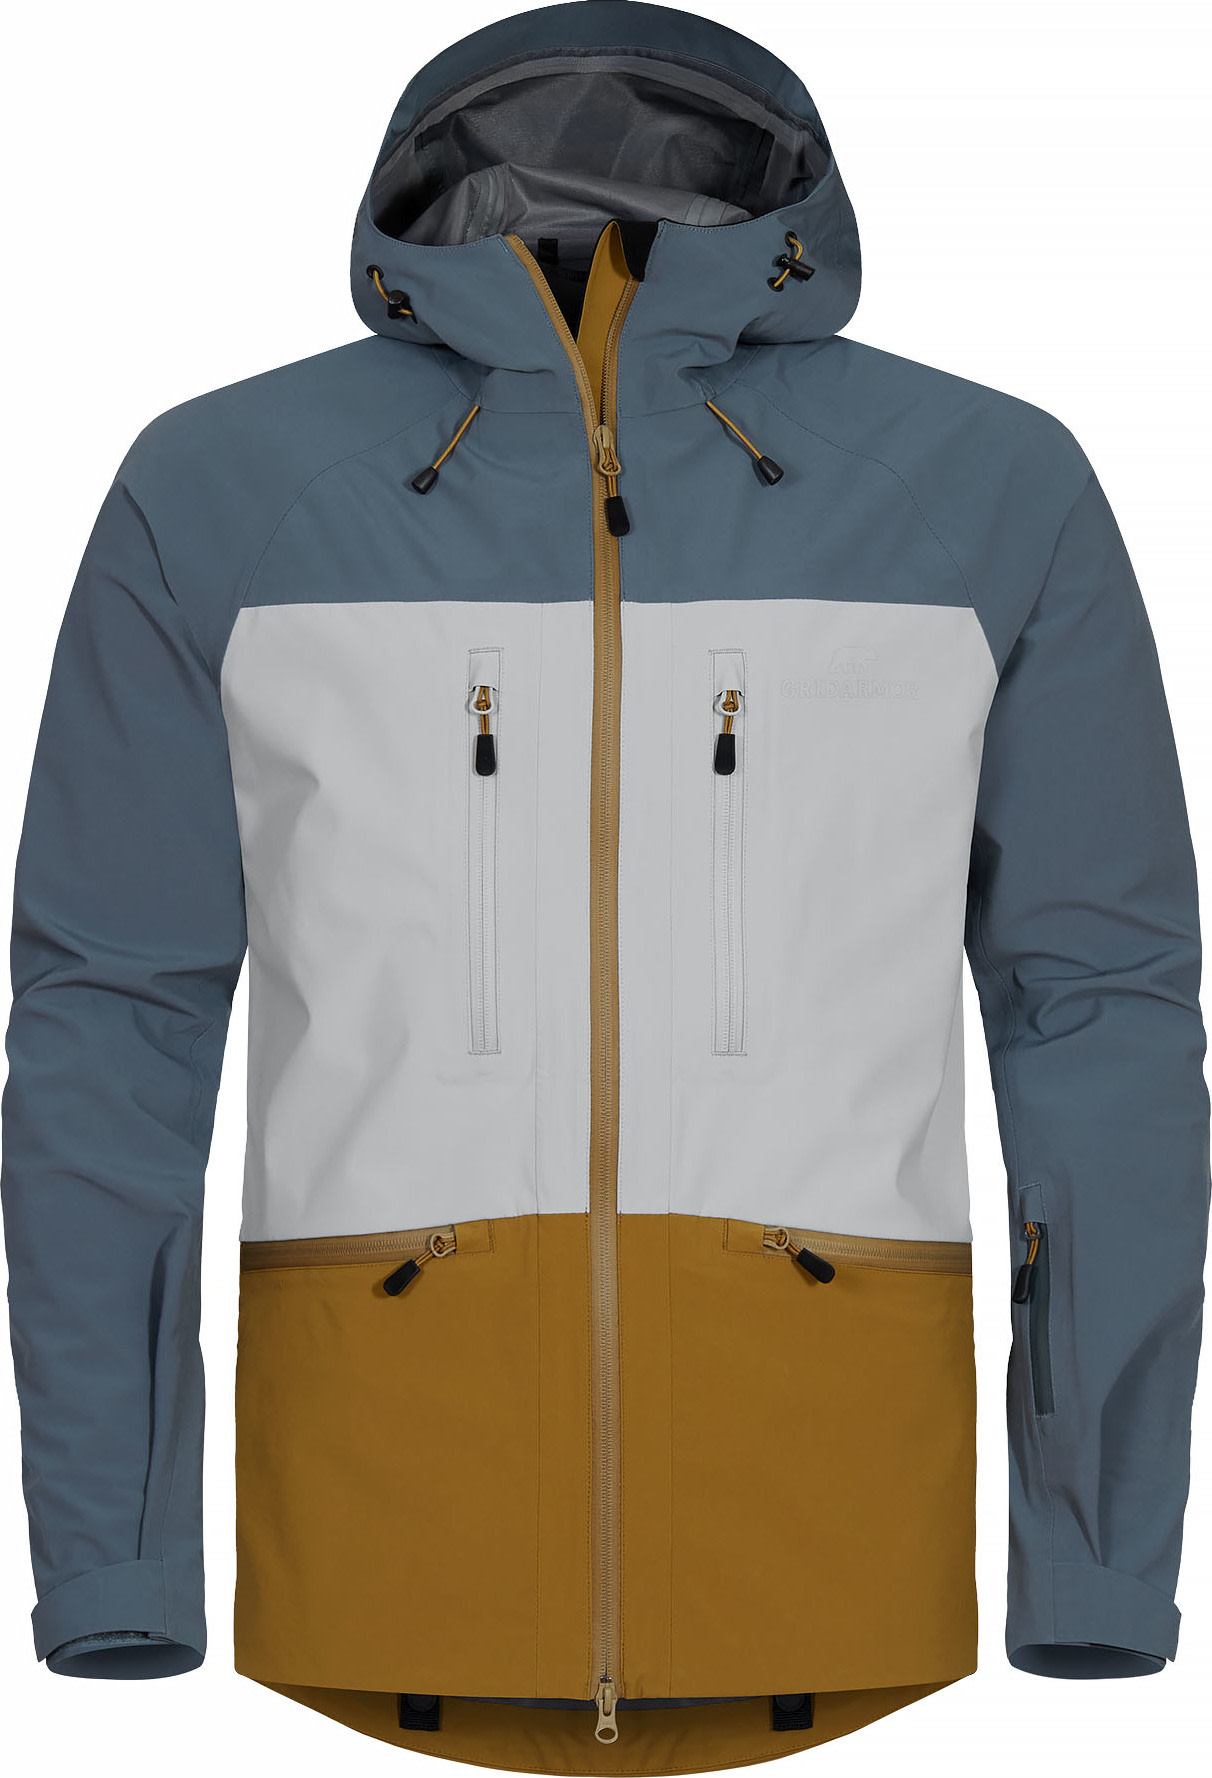 Gridarmor 3 Layer Alpine Jacket Men Multi Color